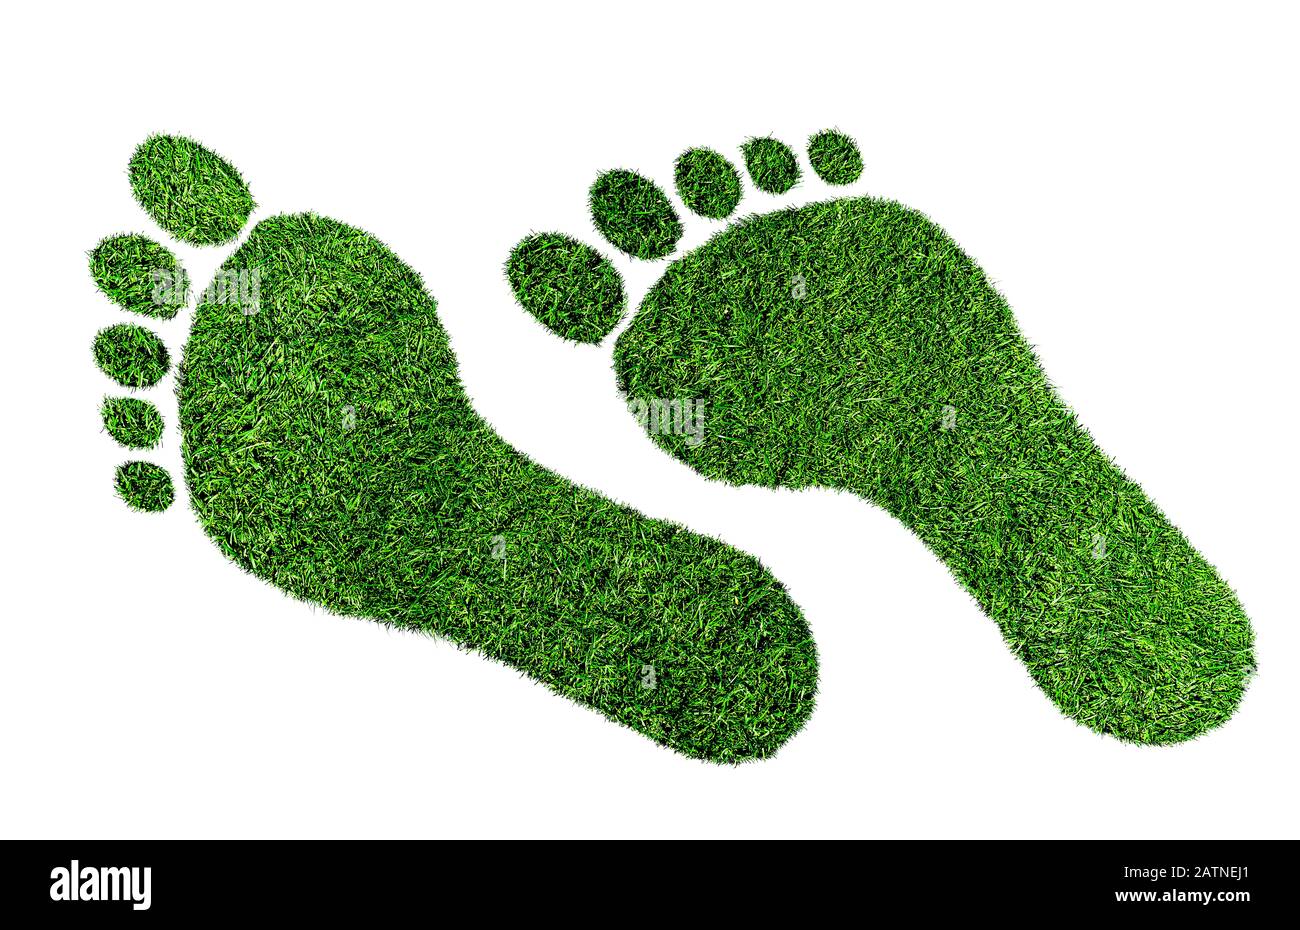 concetto di impronta ecologica, impronta a piedi nudi fatta di erba verde lussureggiante isolato su sfondo bianco Foto Stock